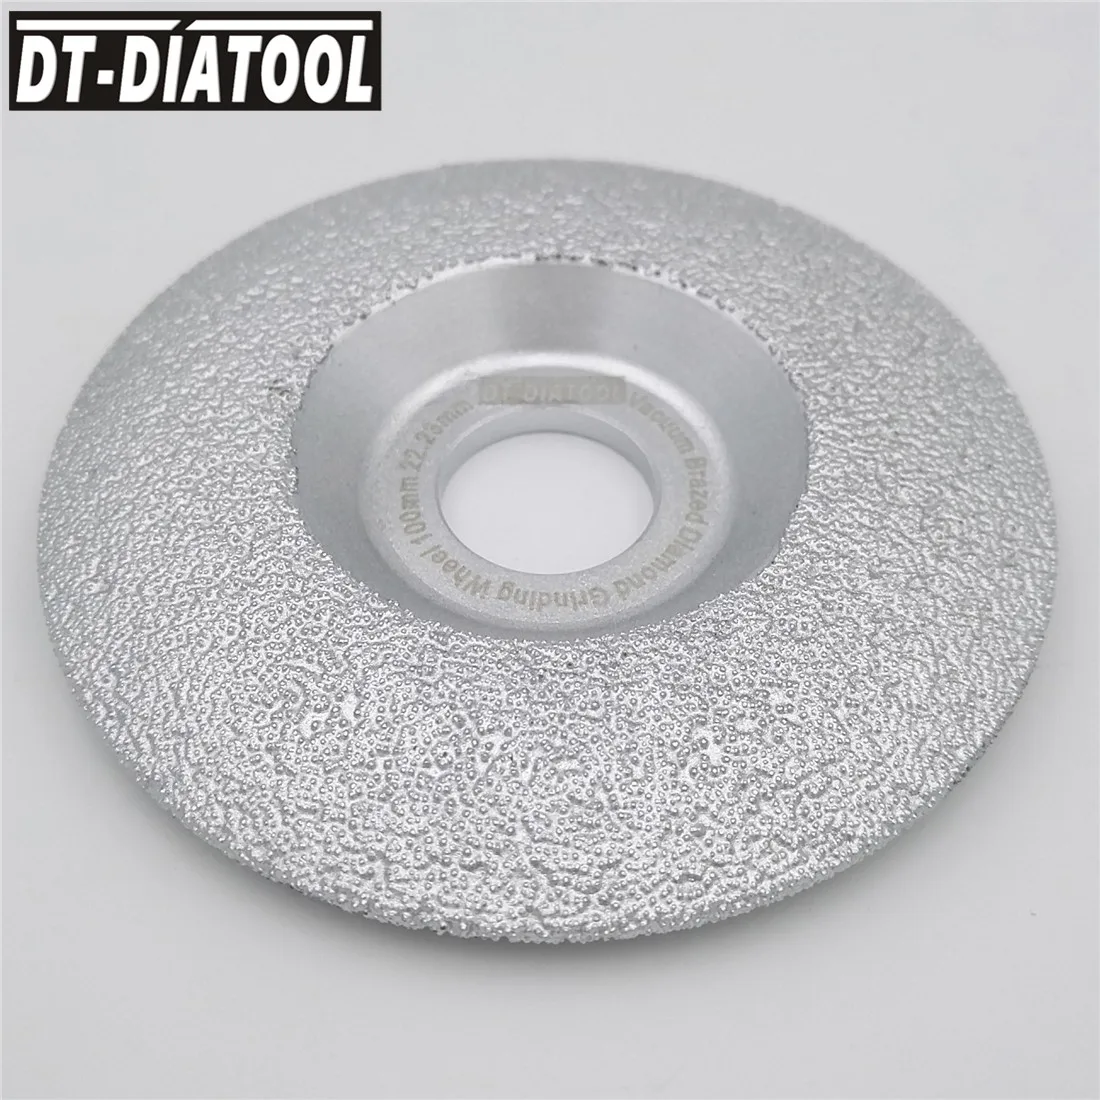 DT-DIATOOL 1pc Vakuumske Brazed Diamantni Brusilni Disk za Suho ali Mokro Brušenje Kolo Za Granit, Marmor Naravnega Kamna Brušenje Disk